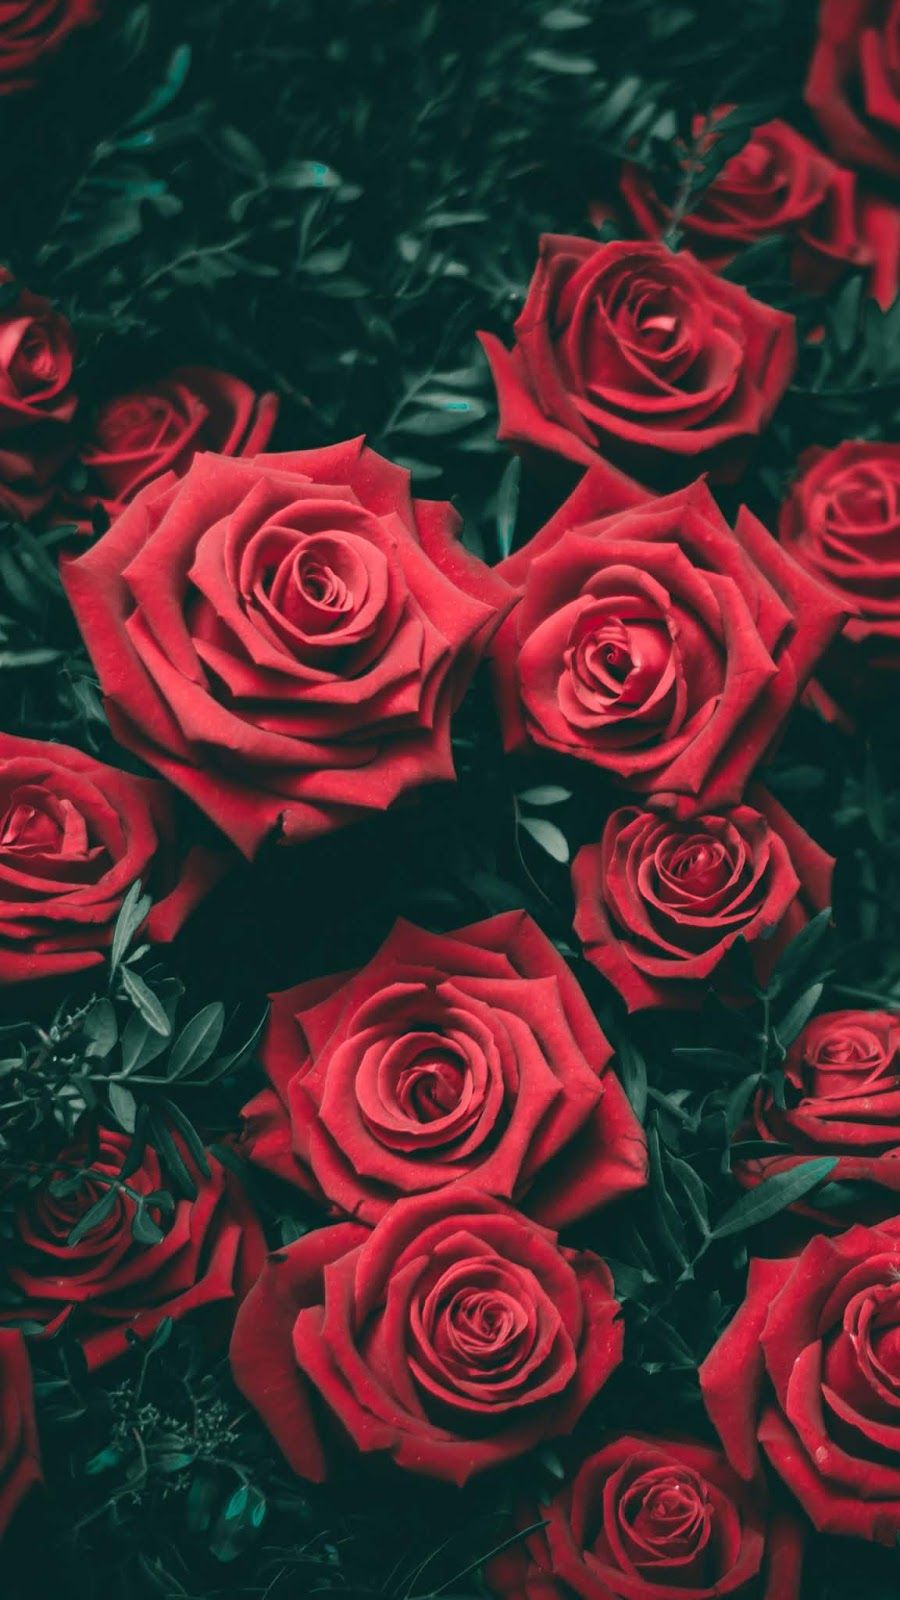 Rose Wallpaper Iphone 6s - HD Wallpaper 